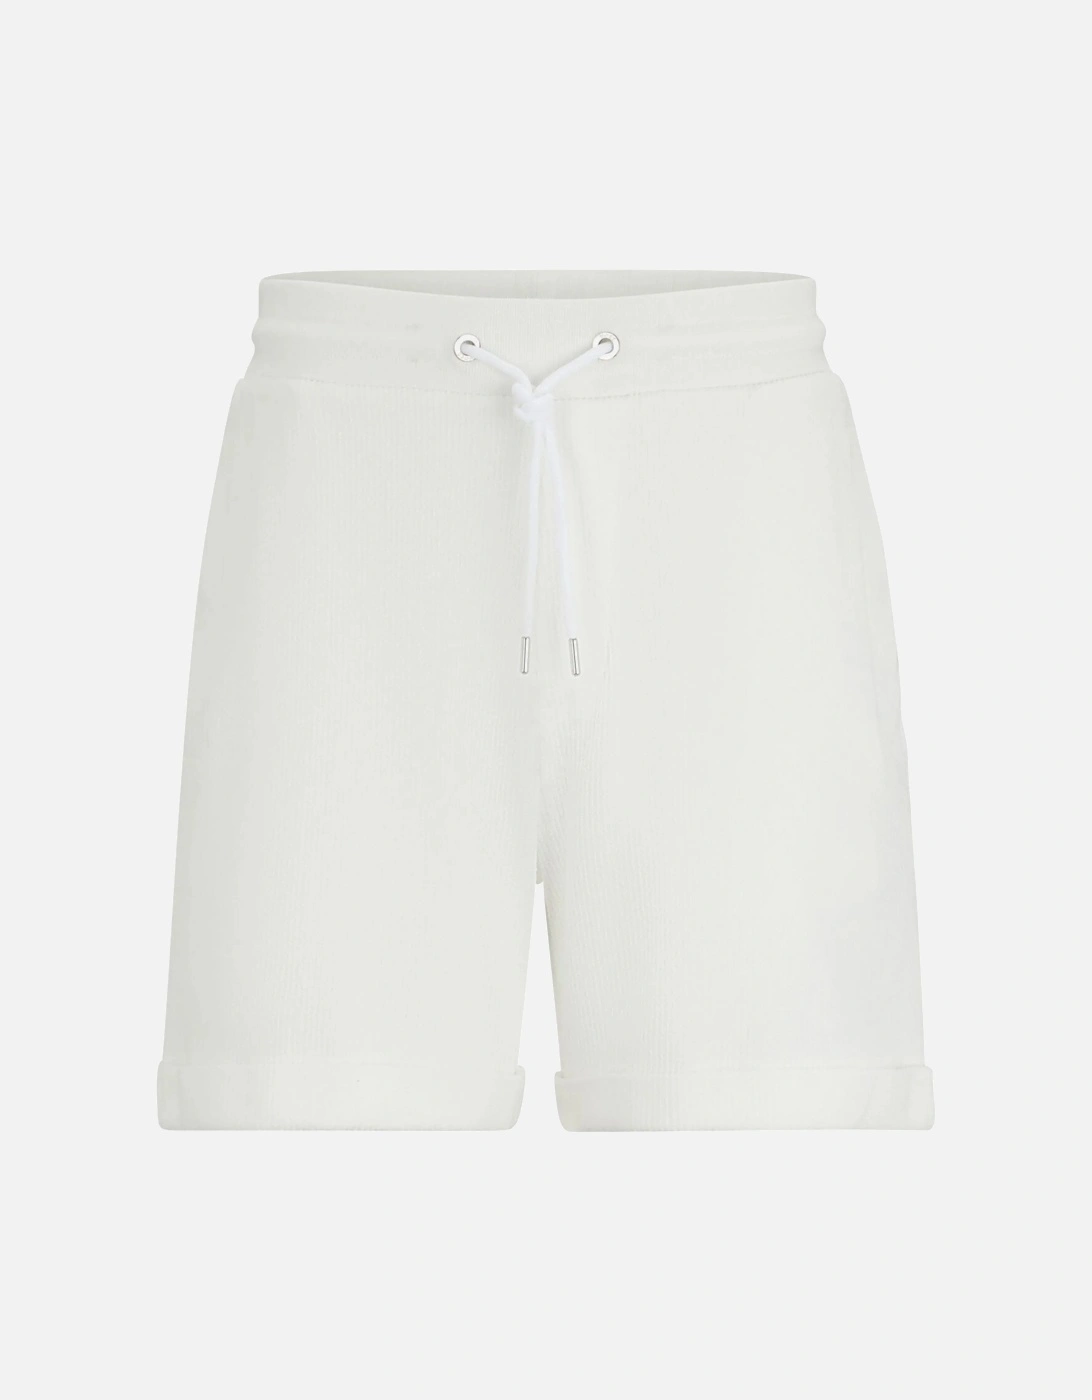 Lasdum 129 Shorts White, 7 of 6